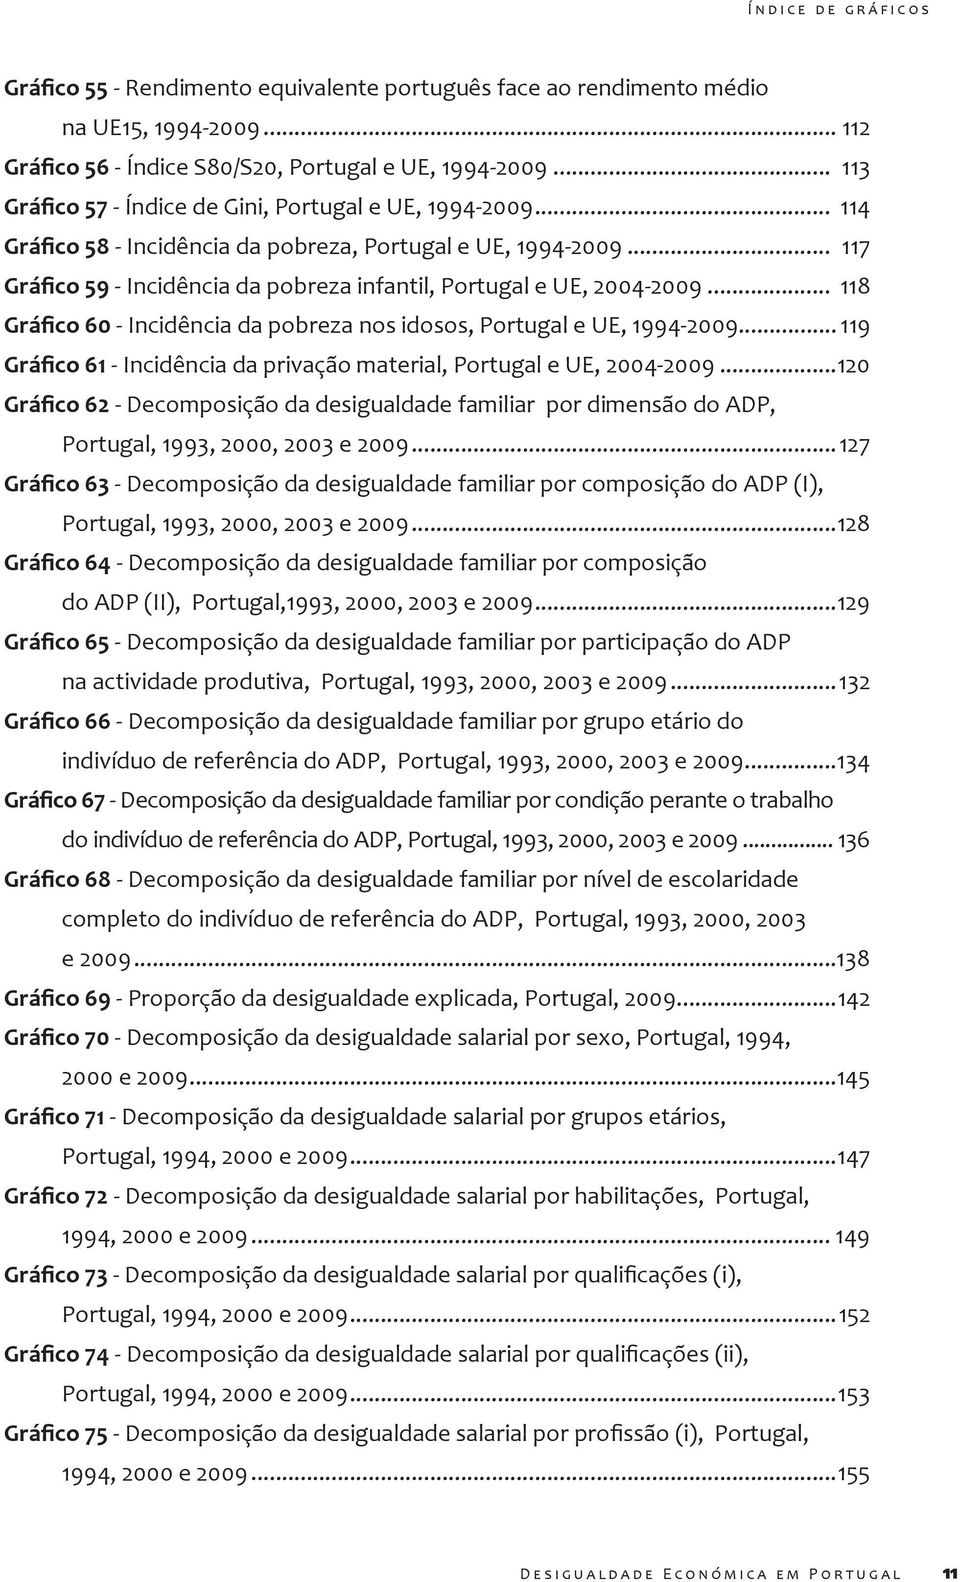 .. 119 - Incidência da privação material, Portugal e UE, 2004-2009...120 - Decomposição da desigualdade familiar por dimensão do ADP, Portugal, 1993, 2000, 2003 e 2009.